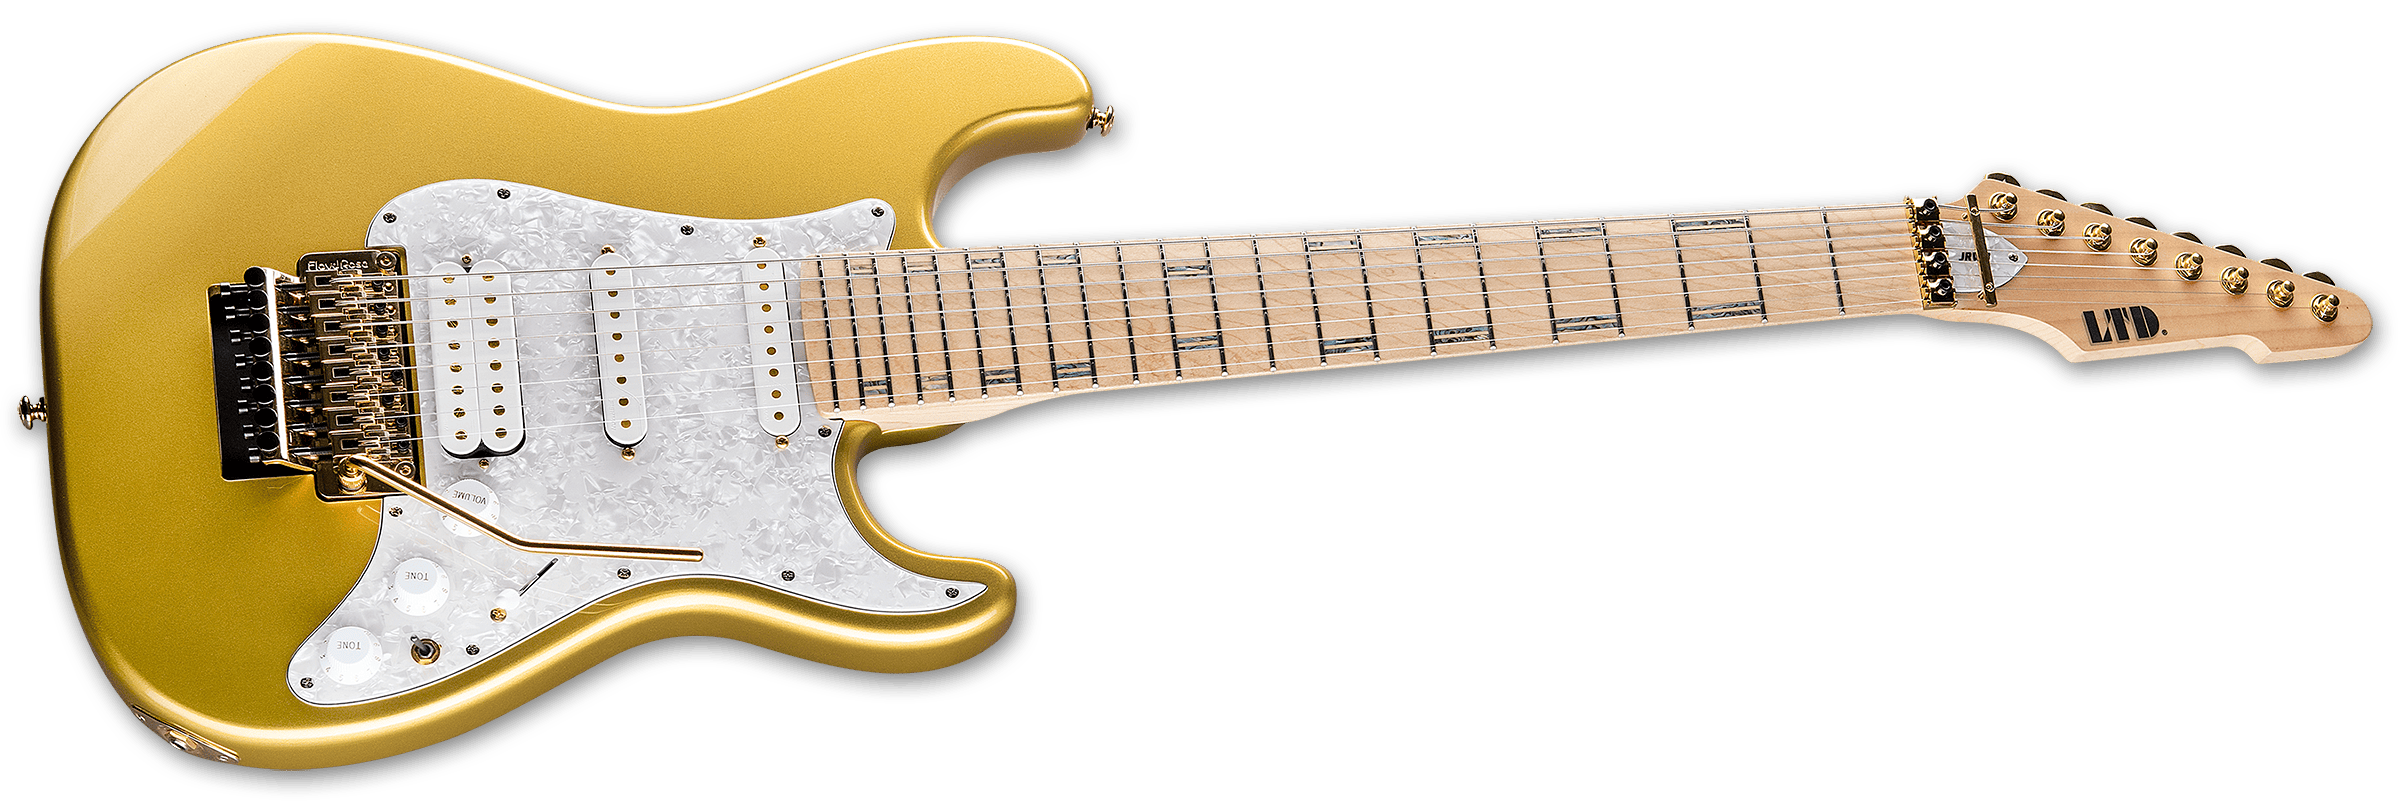 Ltd Jrv8 8-cordes Hss Trem Mn - Metallic Gold - Guitare Électrique 7 Cordes - Variation 2